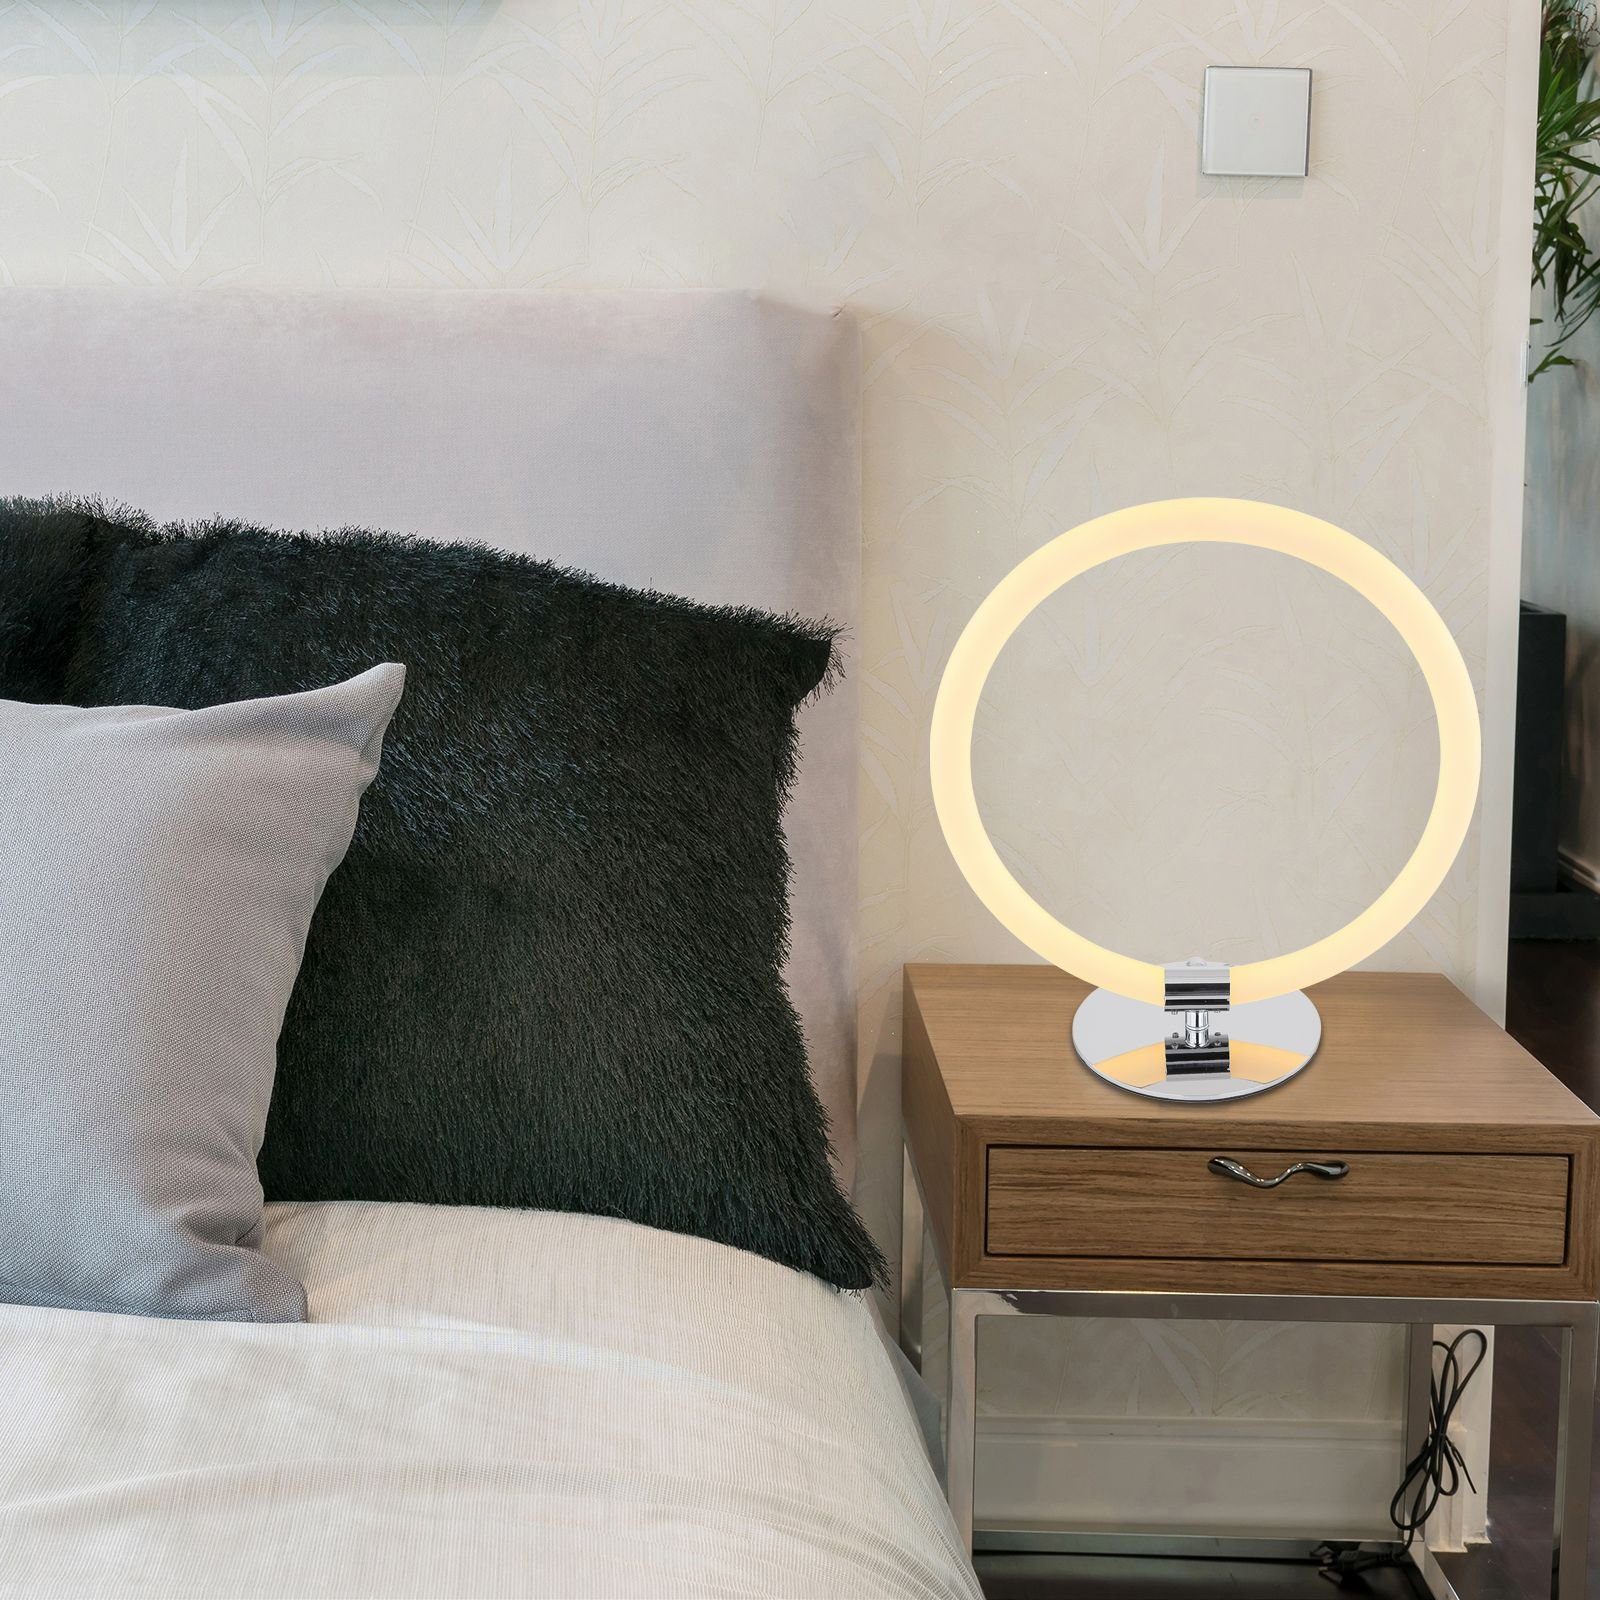 GLOBO LEUCHTEN Globo Tischleuchte Tischleuchte GLOBO LED Wohnzimmer Tischlampe mit Schalter